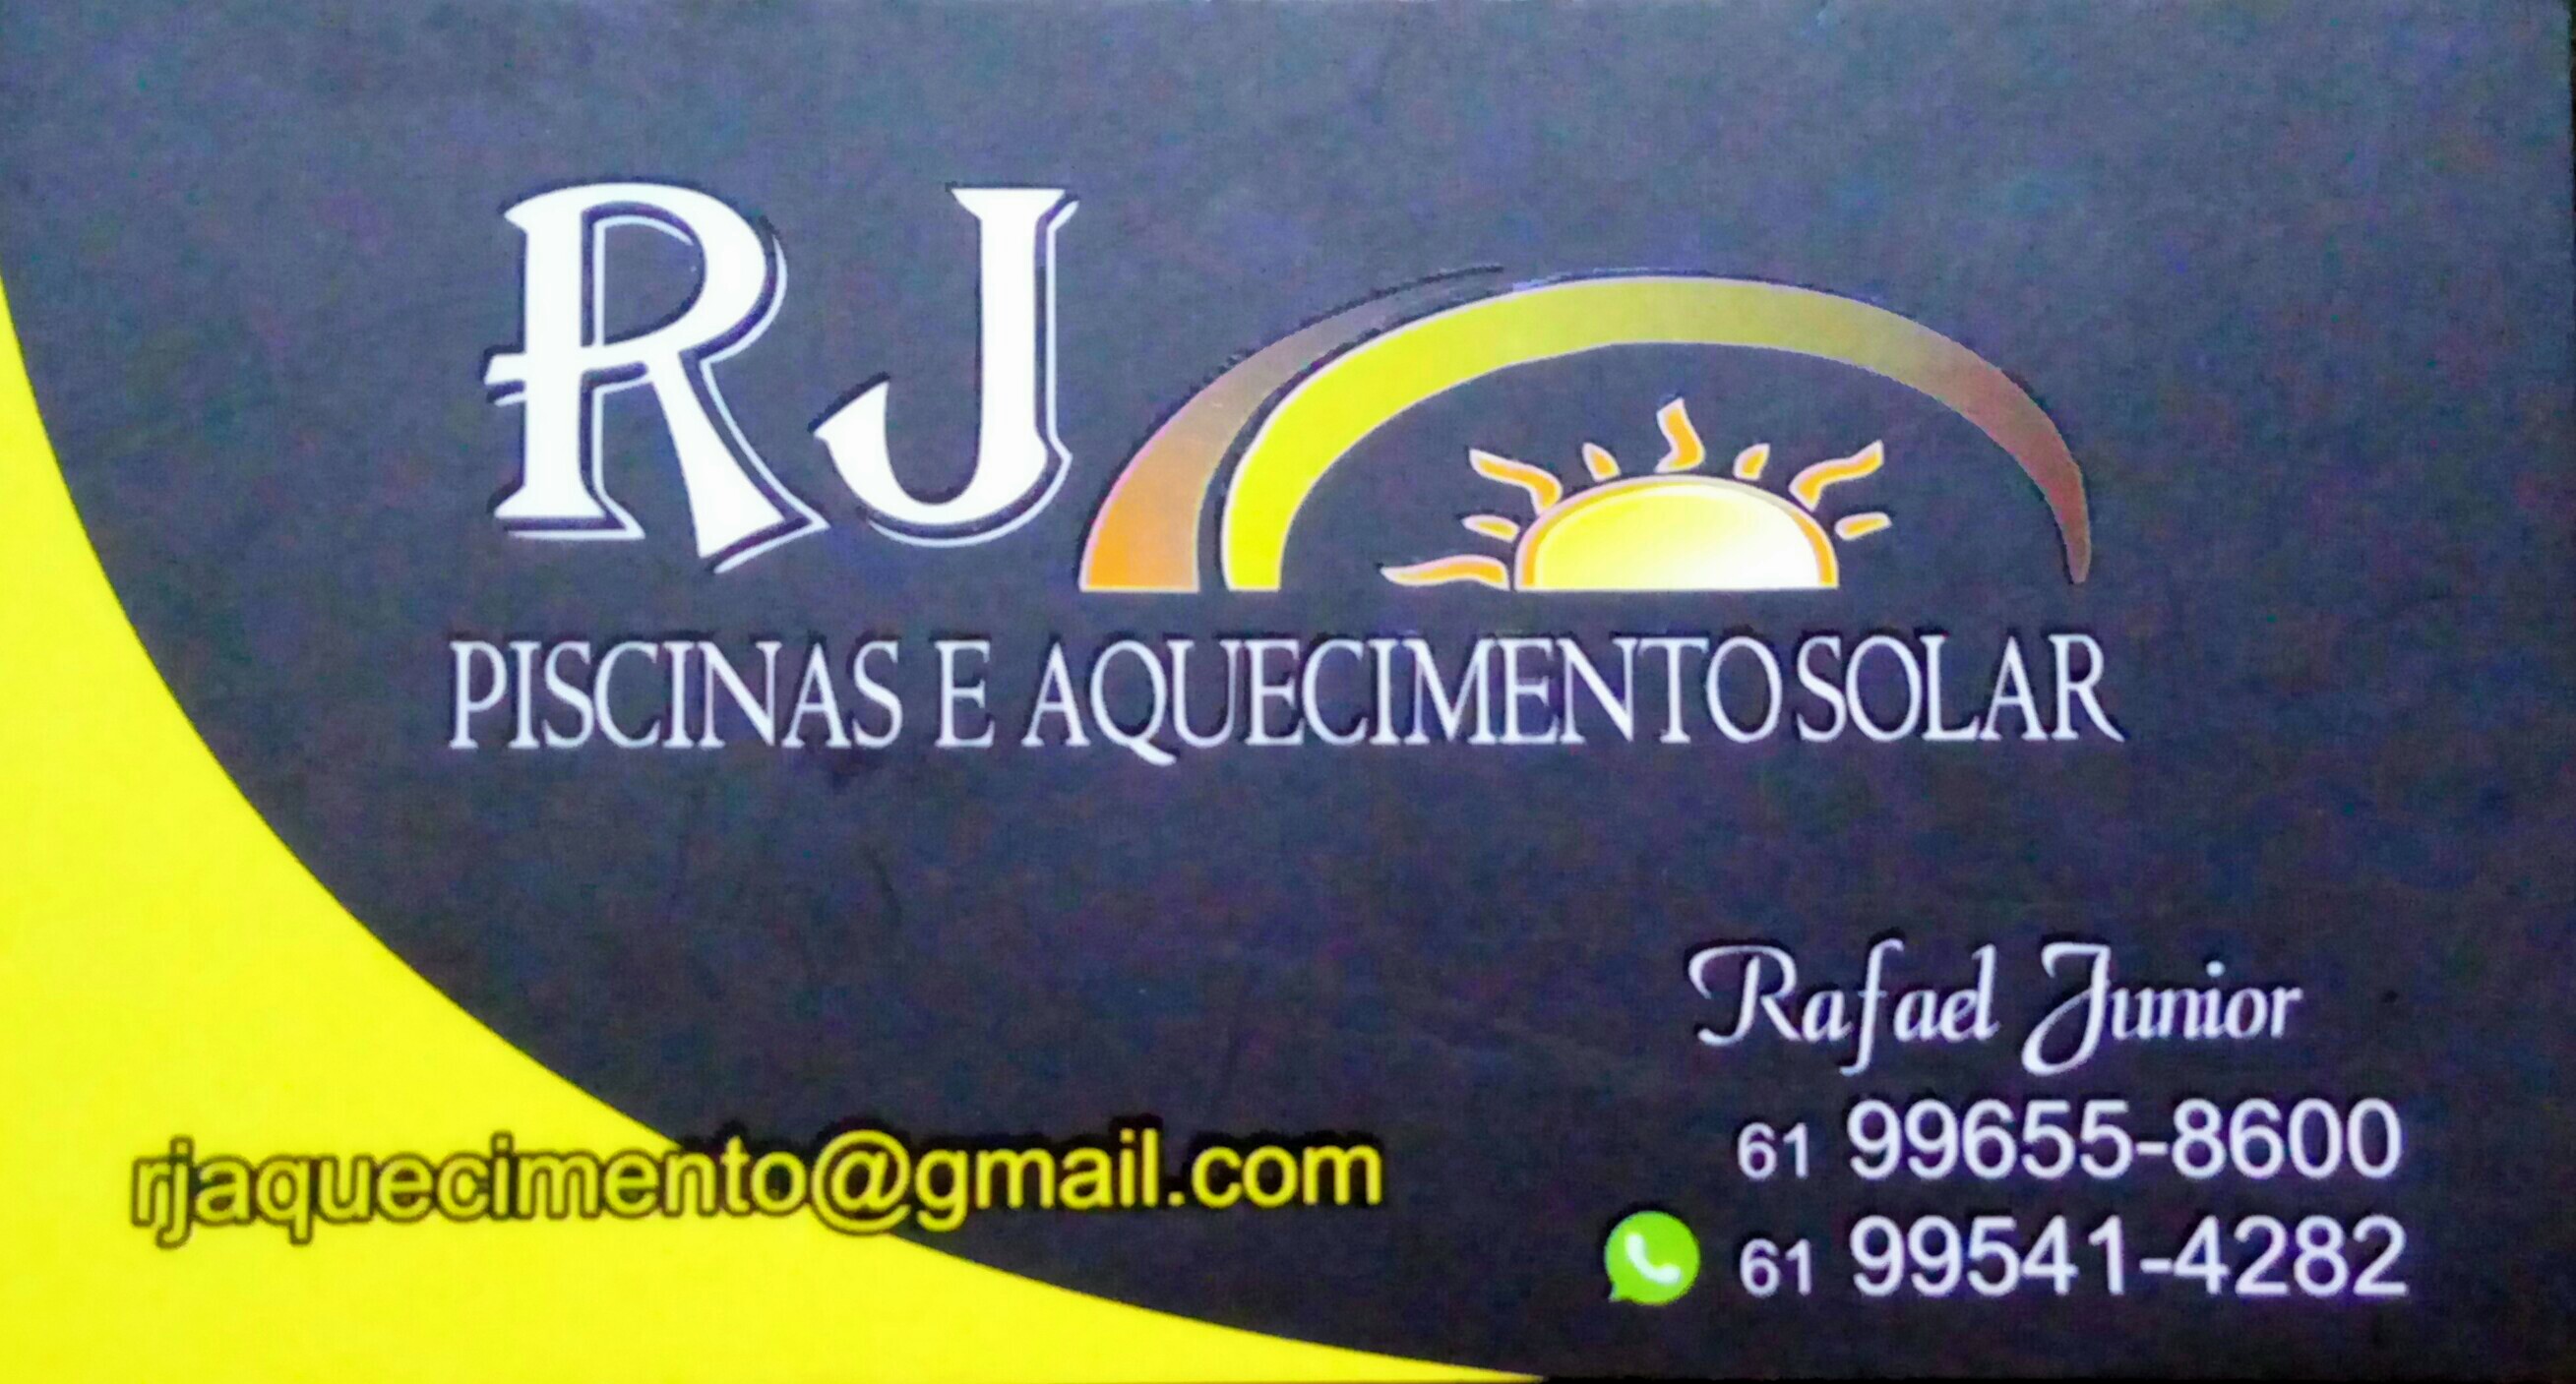 RJ AQUECIMENTO SOLAR PISCINA - Piscinas - Manutenção - Brasília, DF